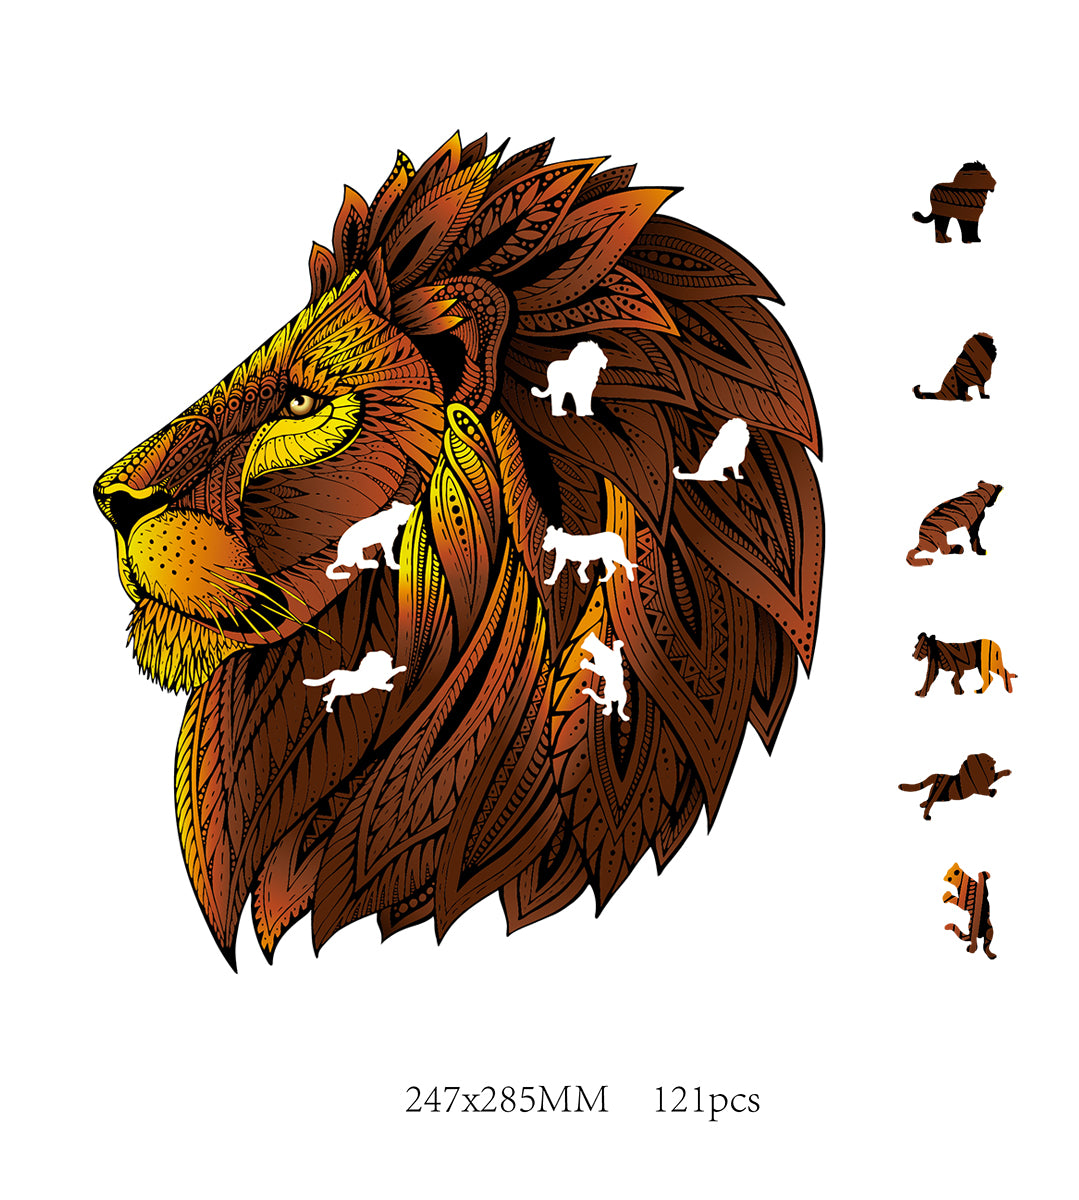 2D-puzzel leeuw in hout 121pc